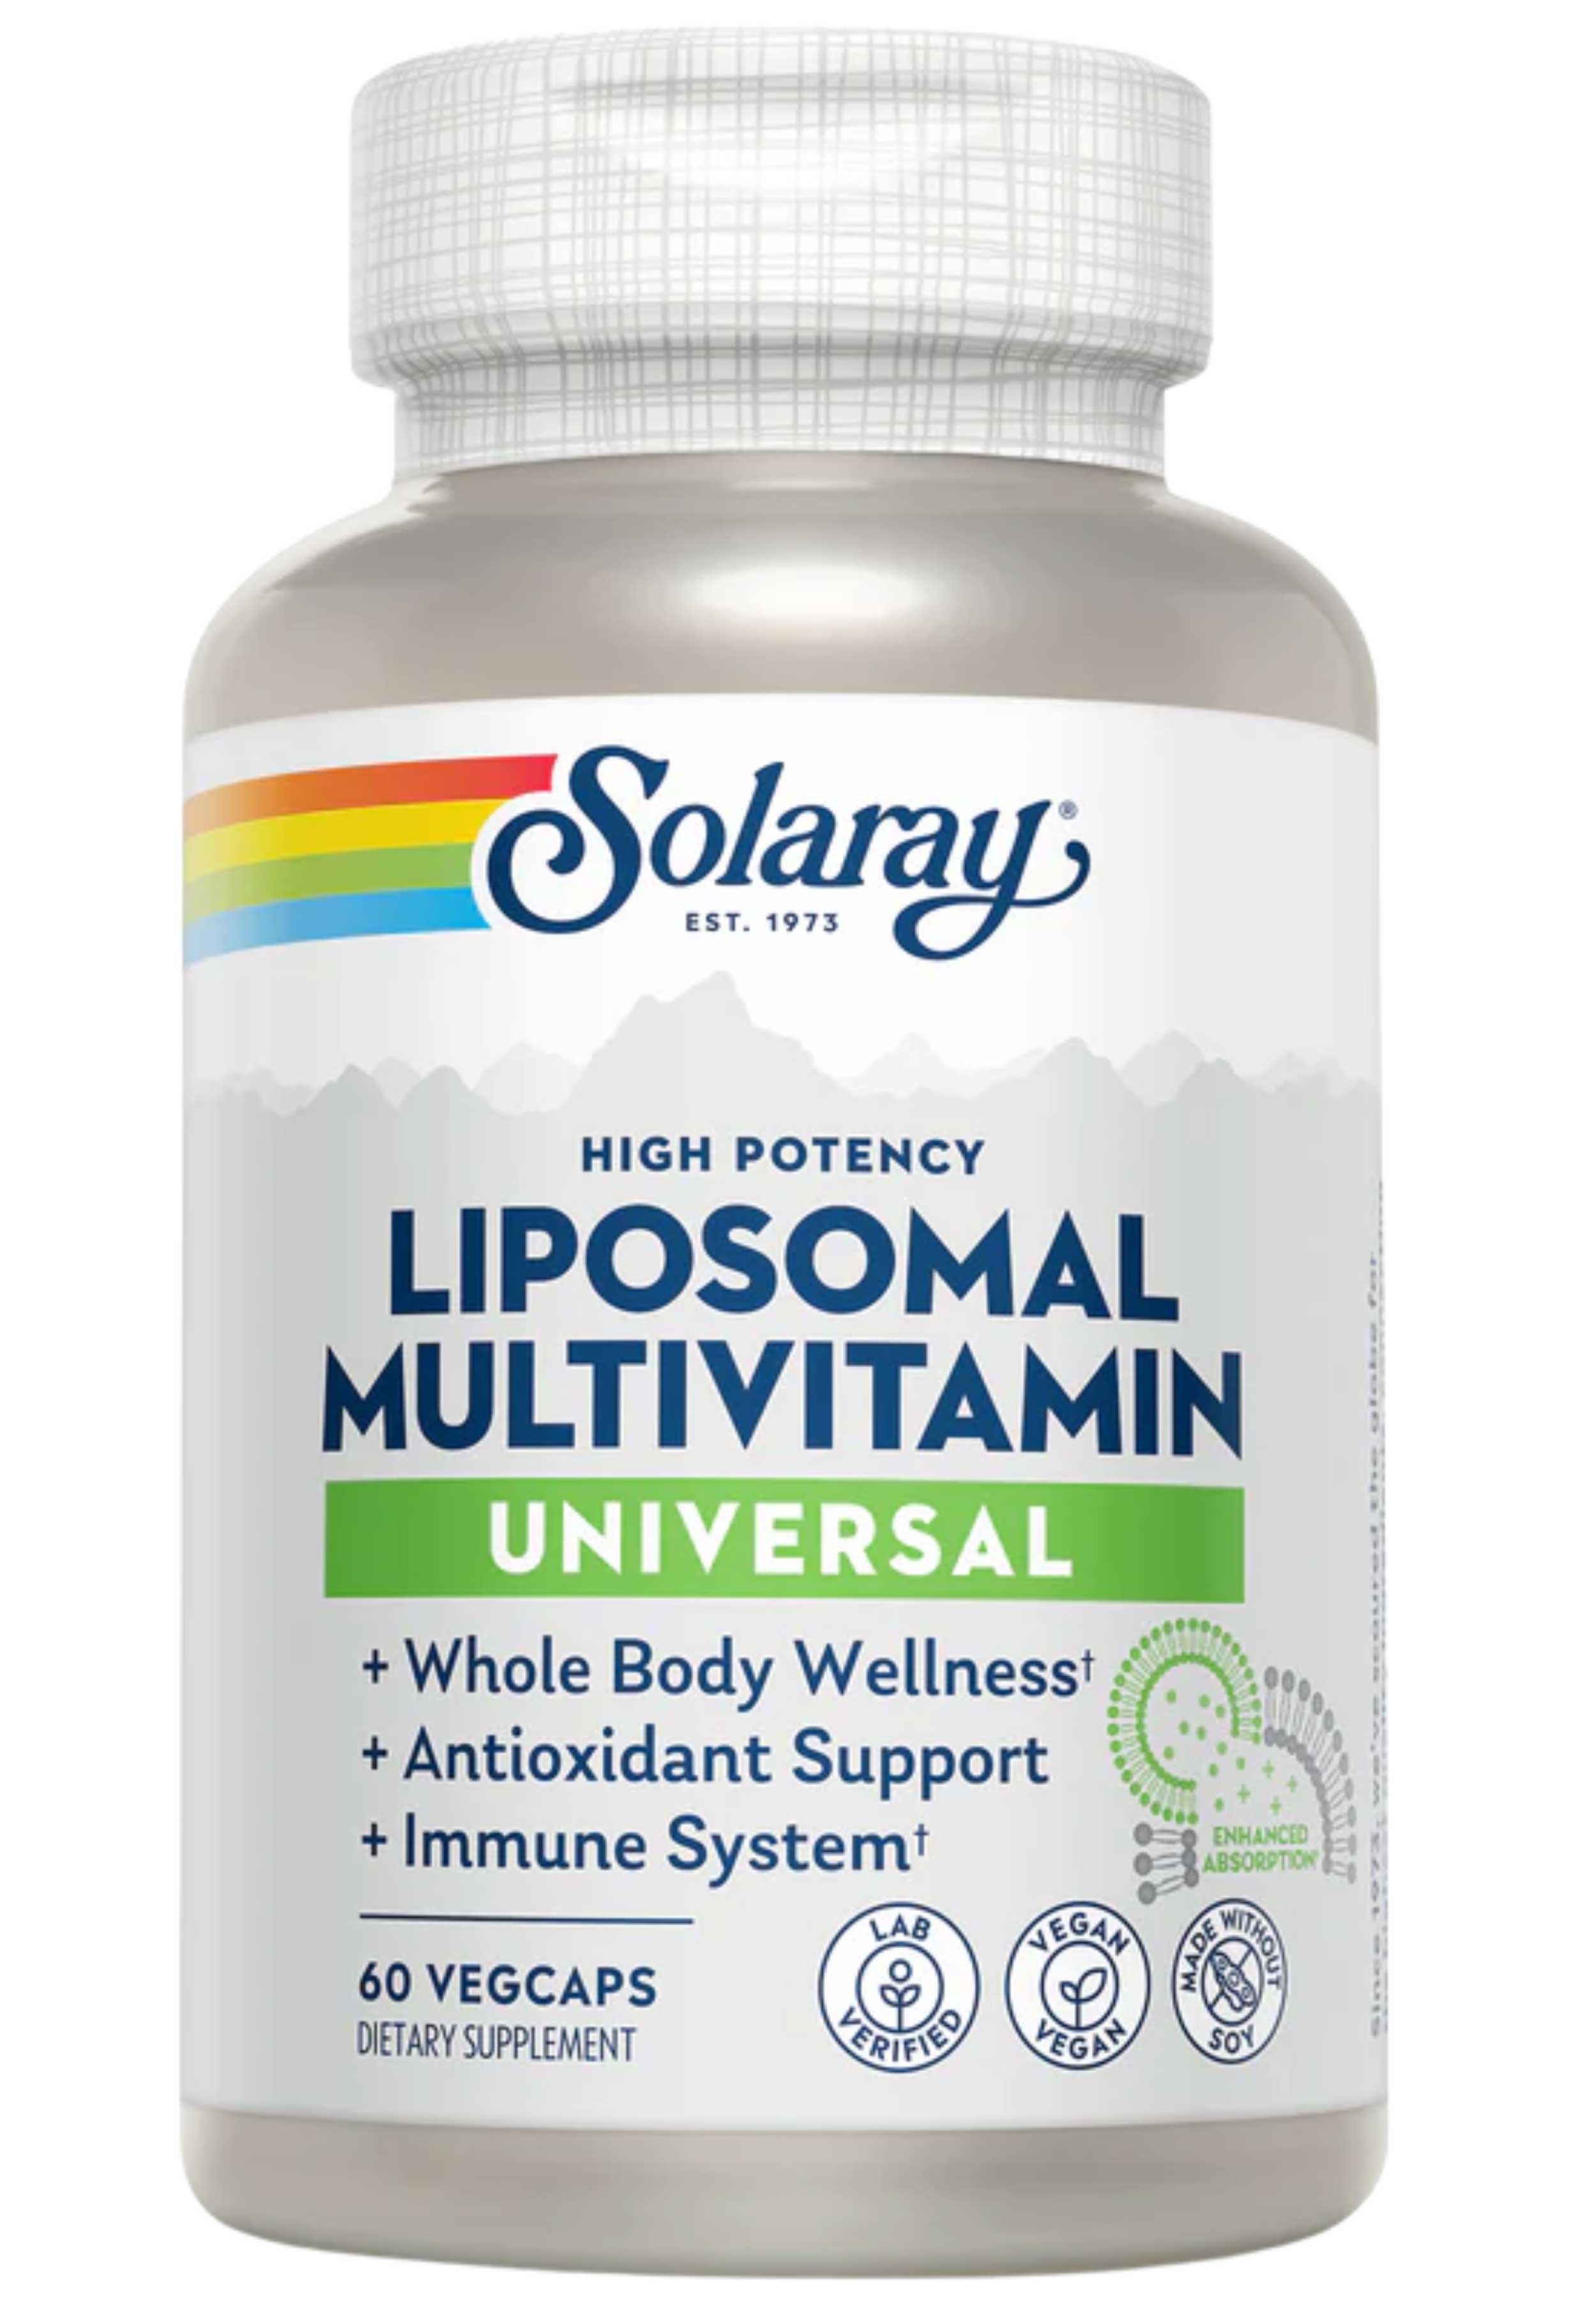 Solaray Liposomal Universal MultiVitamin